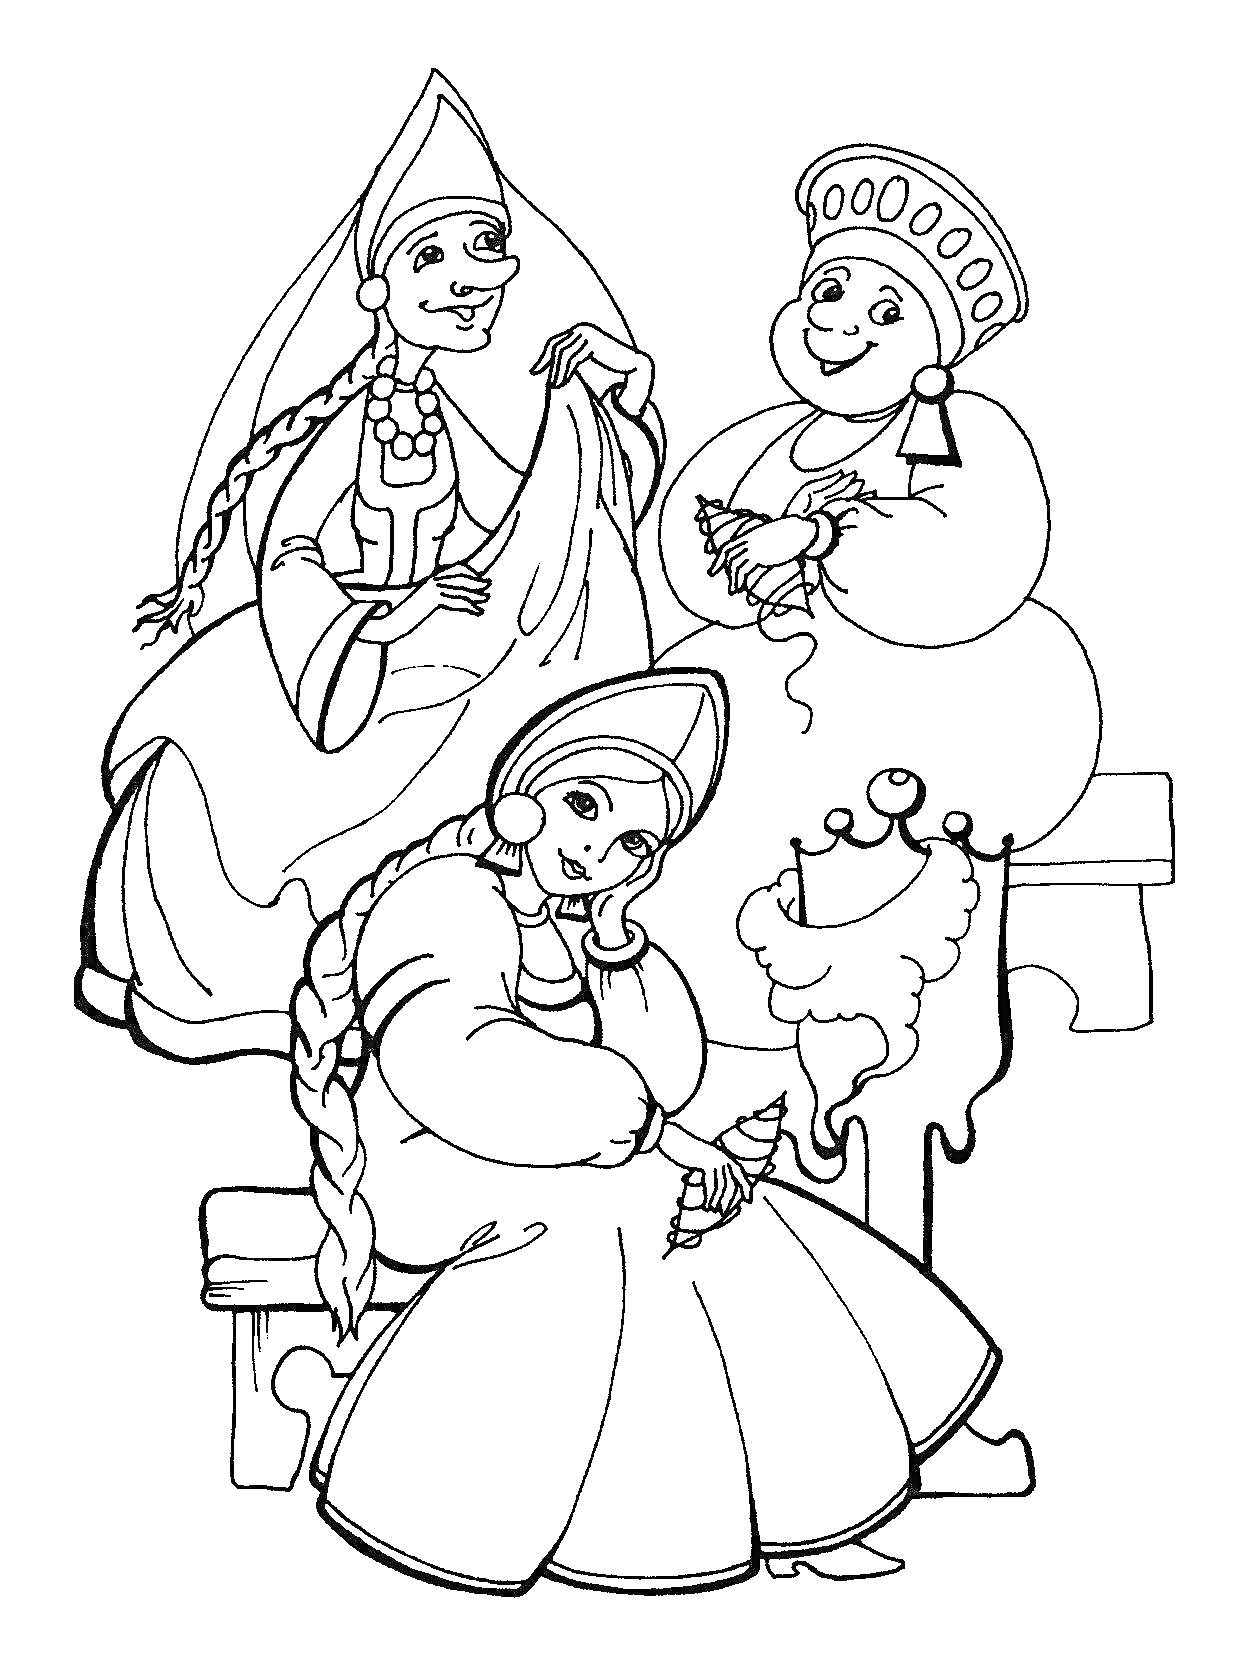 Раскраска Три женщины в традиционных нарядах на скамеечке с прялкой из сказки о Царе Салтане